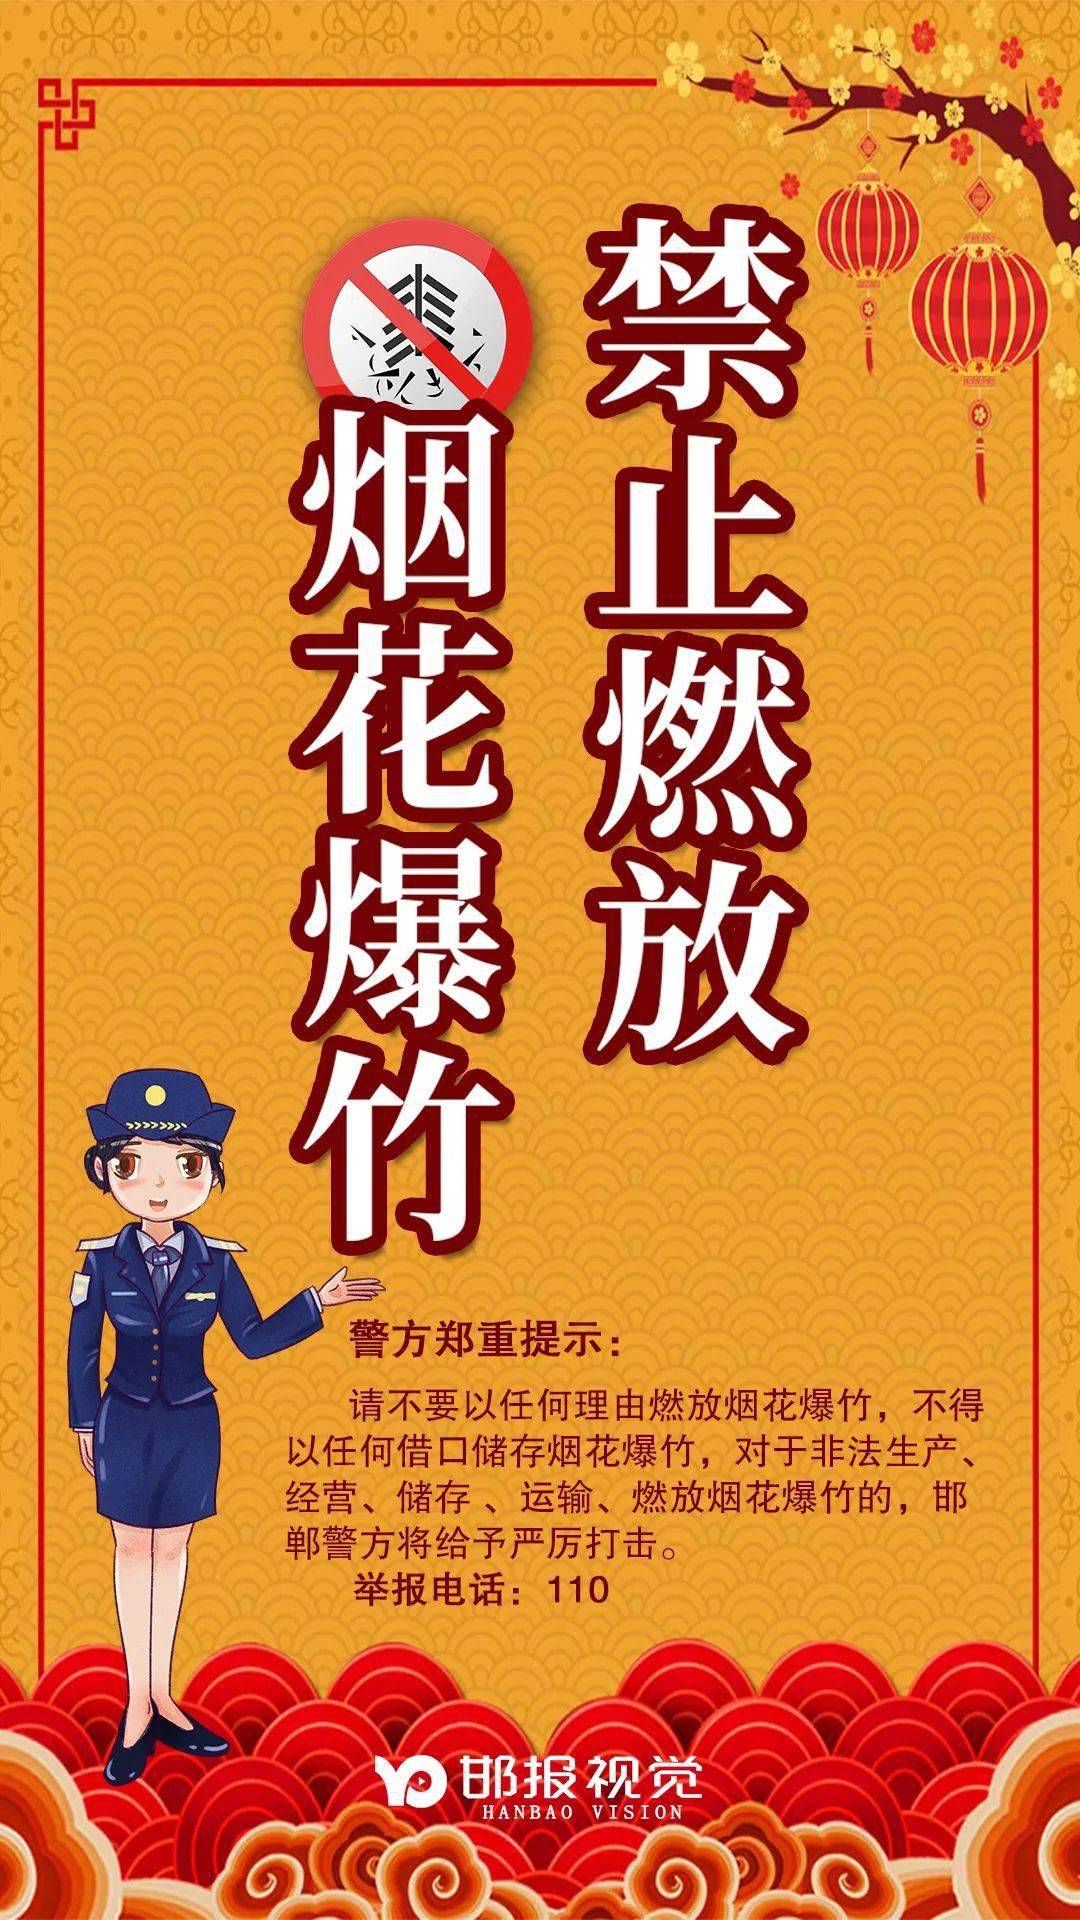 冀南新区警方郑重提示:不要以任何理由燃放烟花爆竹!